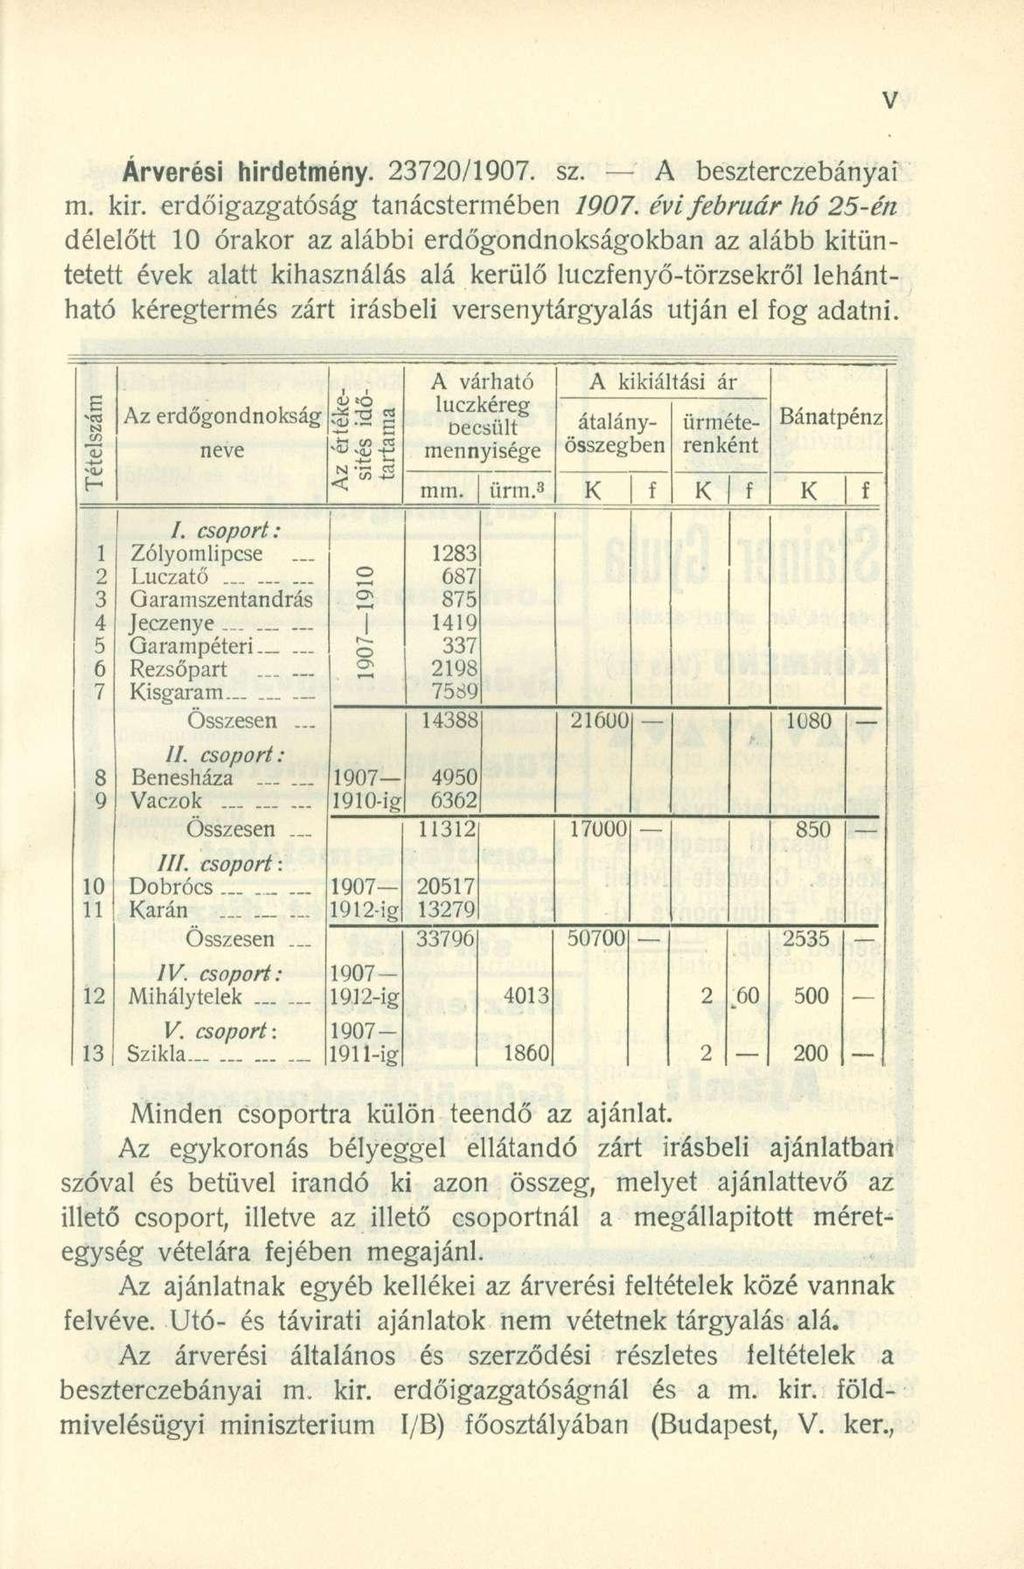 Árverési hirdetmény. 23720/1907. sz. A beszterezebányai m. kir. erdőigazgatóság tanácstermében 1907.